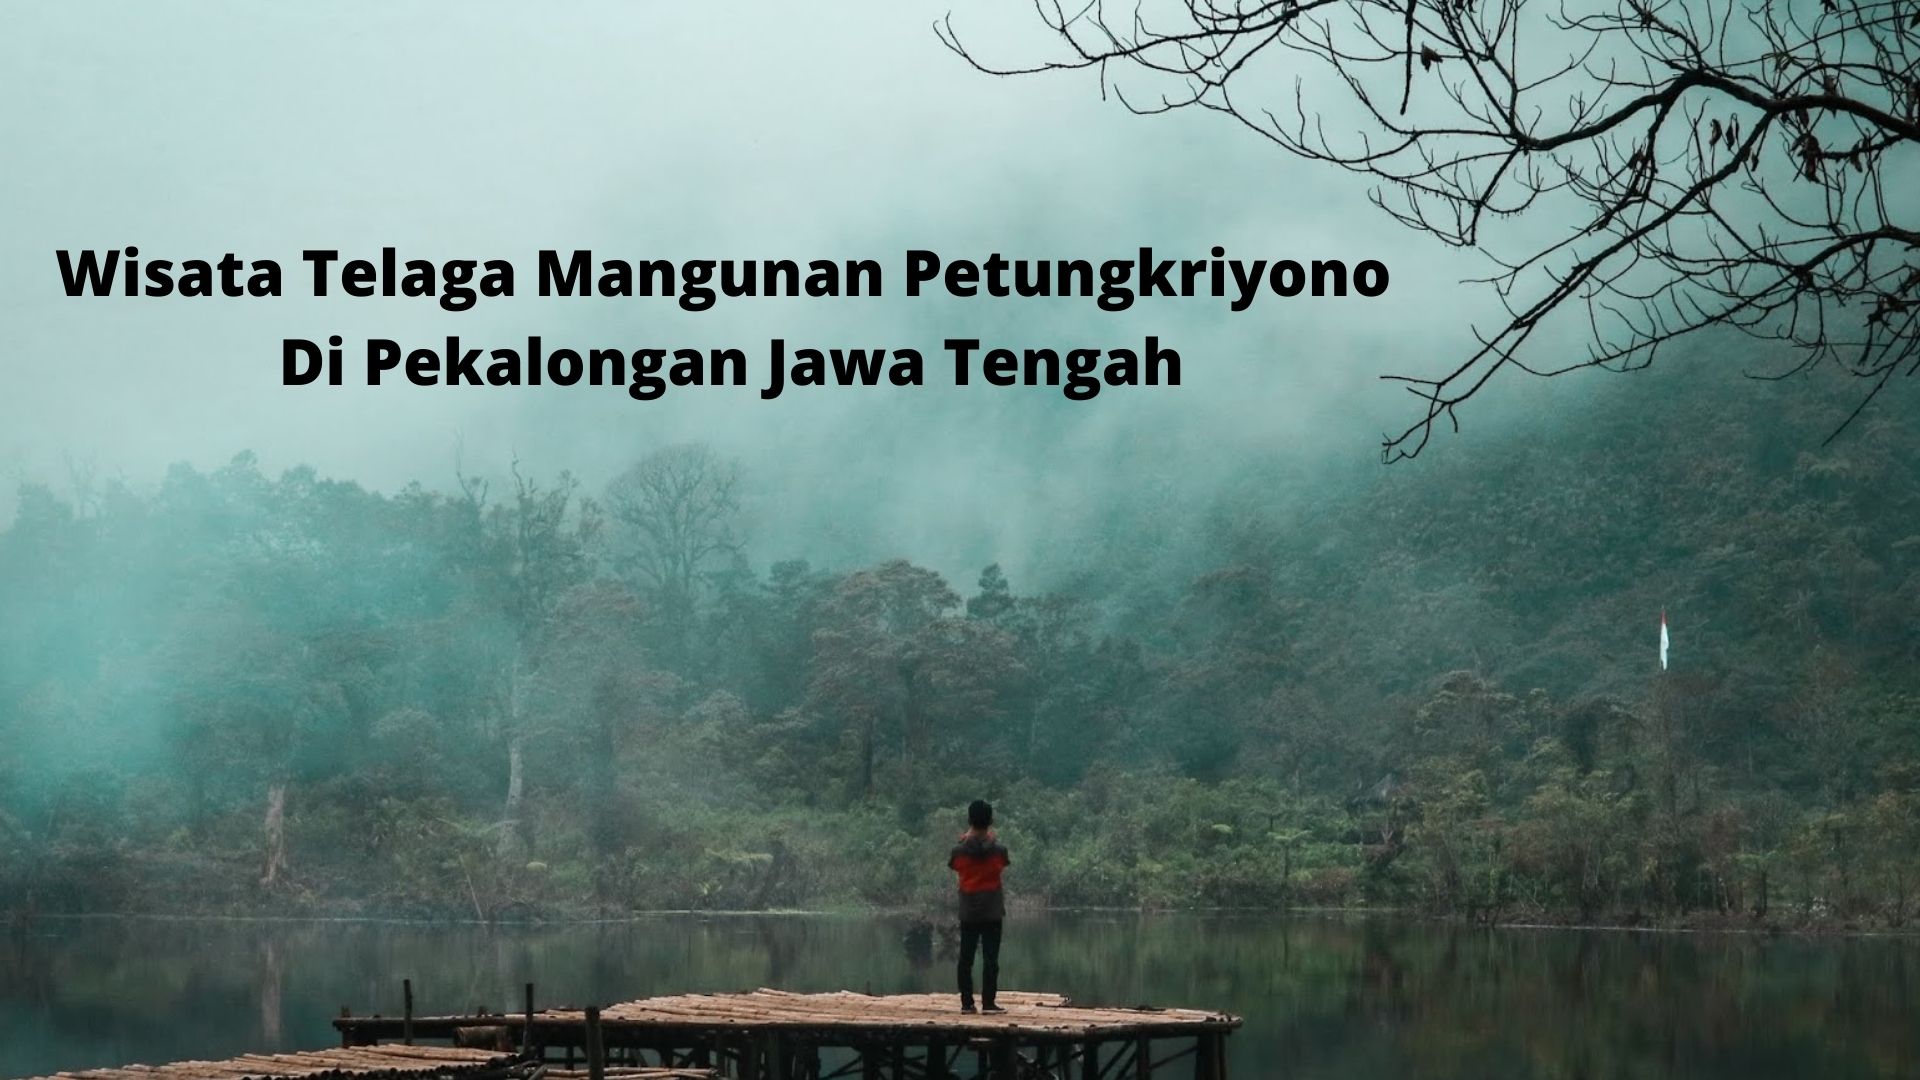 You are currently viewing Wisata Telaga Mangunan Petungkriyono Di Pekalongan Jawa Tengah